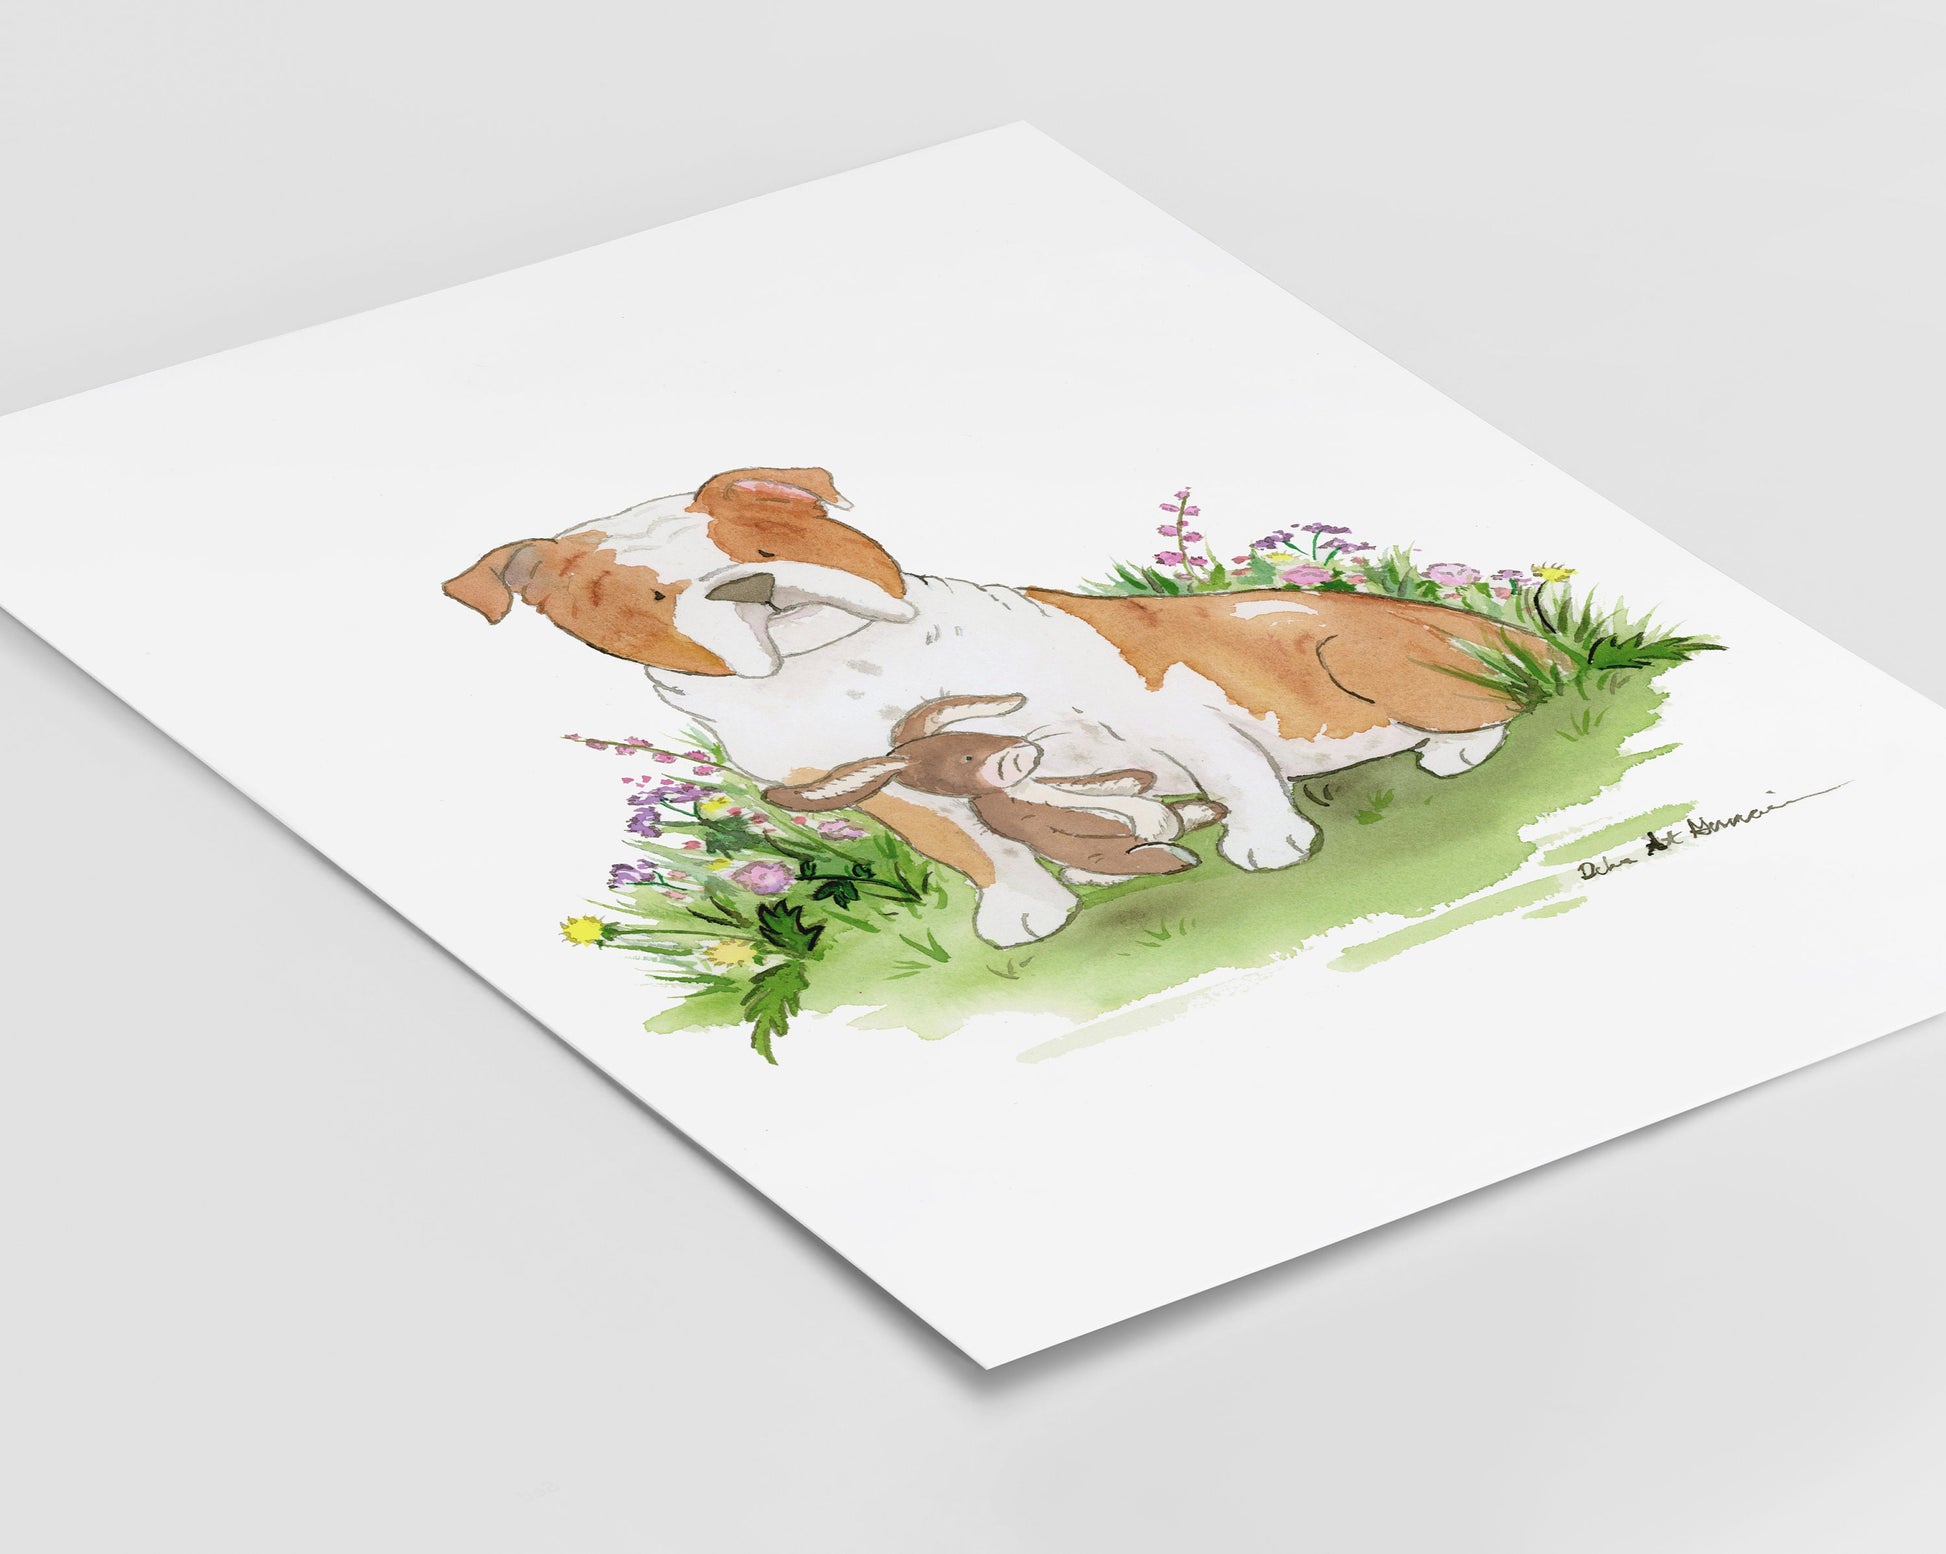 English Bulldog Watercolor Illustration Print, Bulldog with Bunny Art